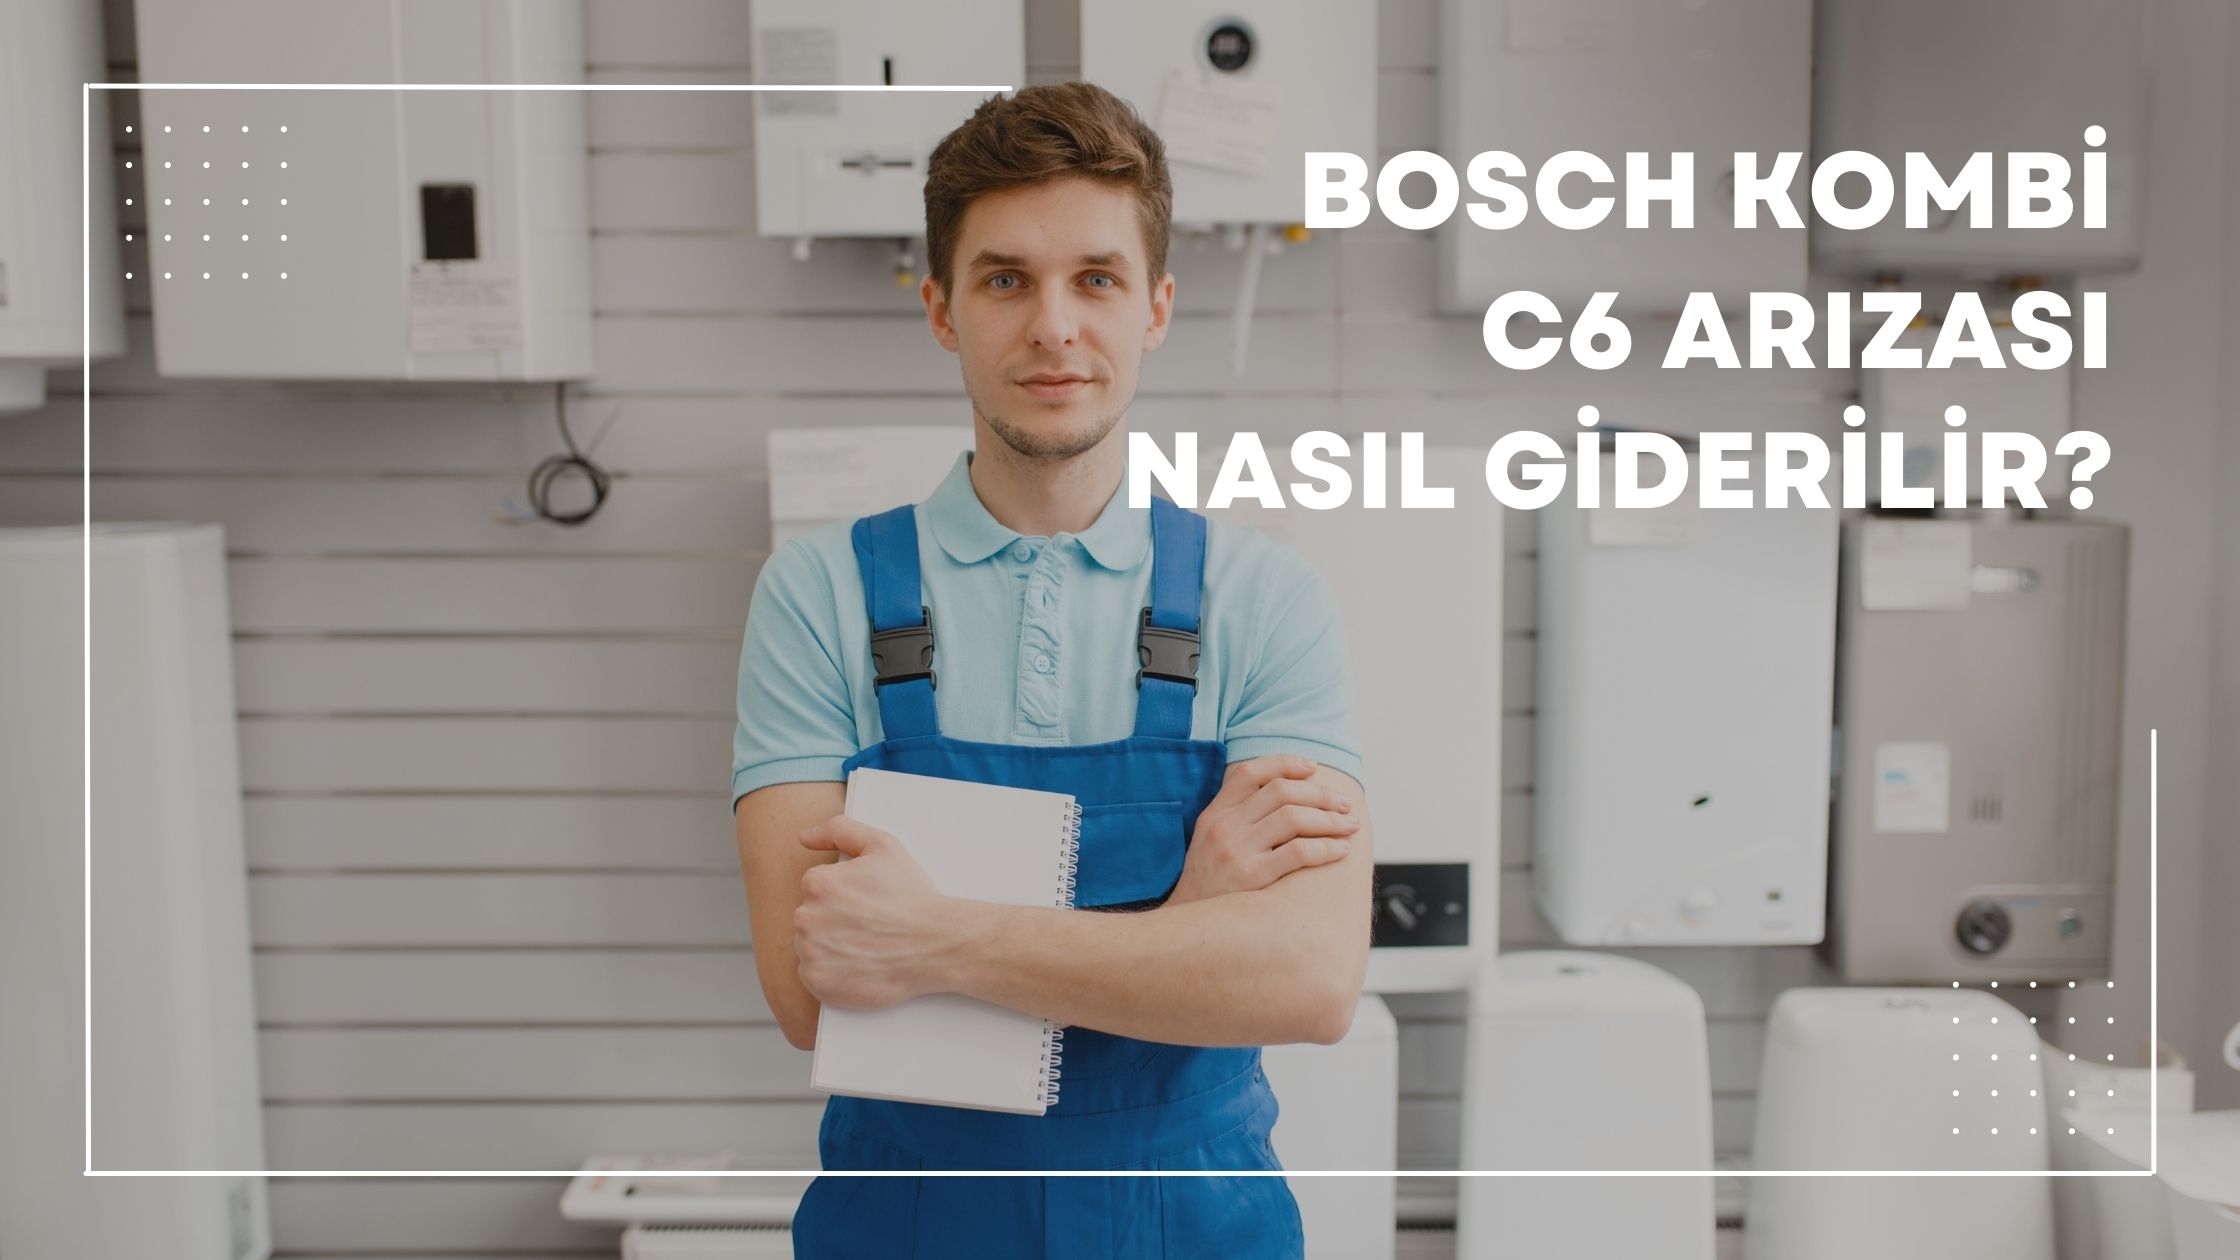 Bosch Kombi C6 Arızası Nasıl Giderilir